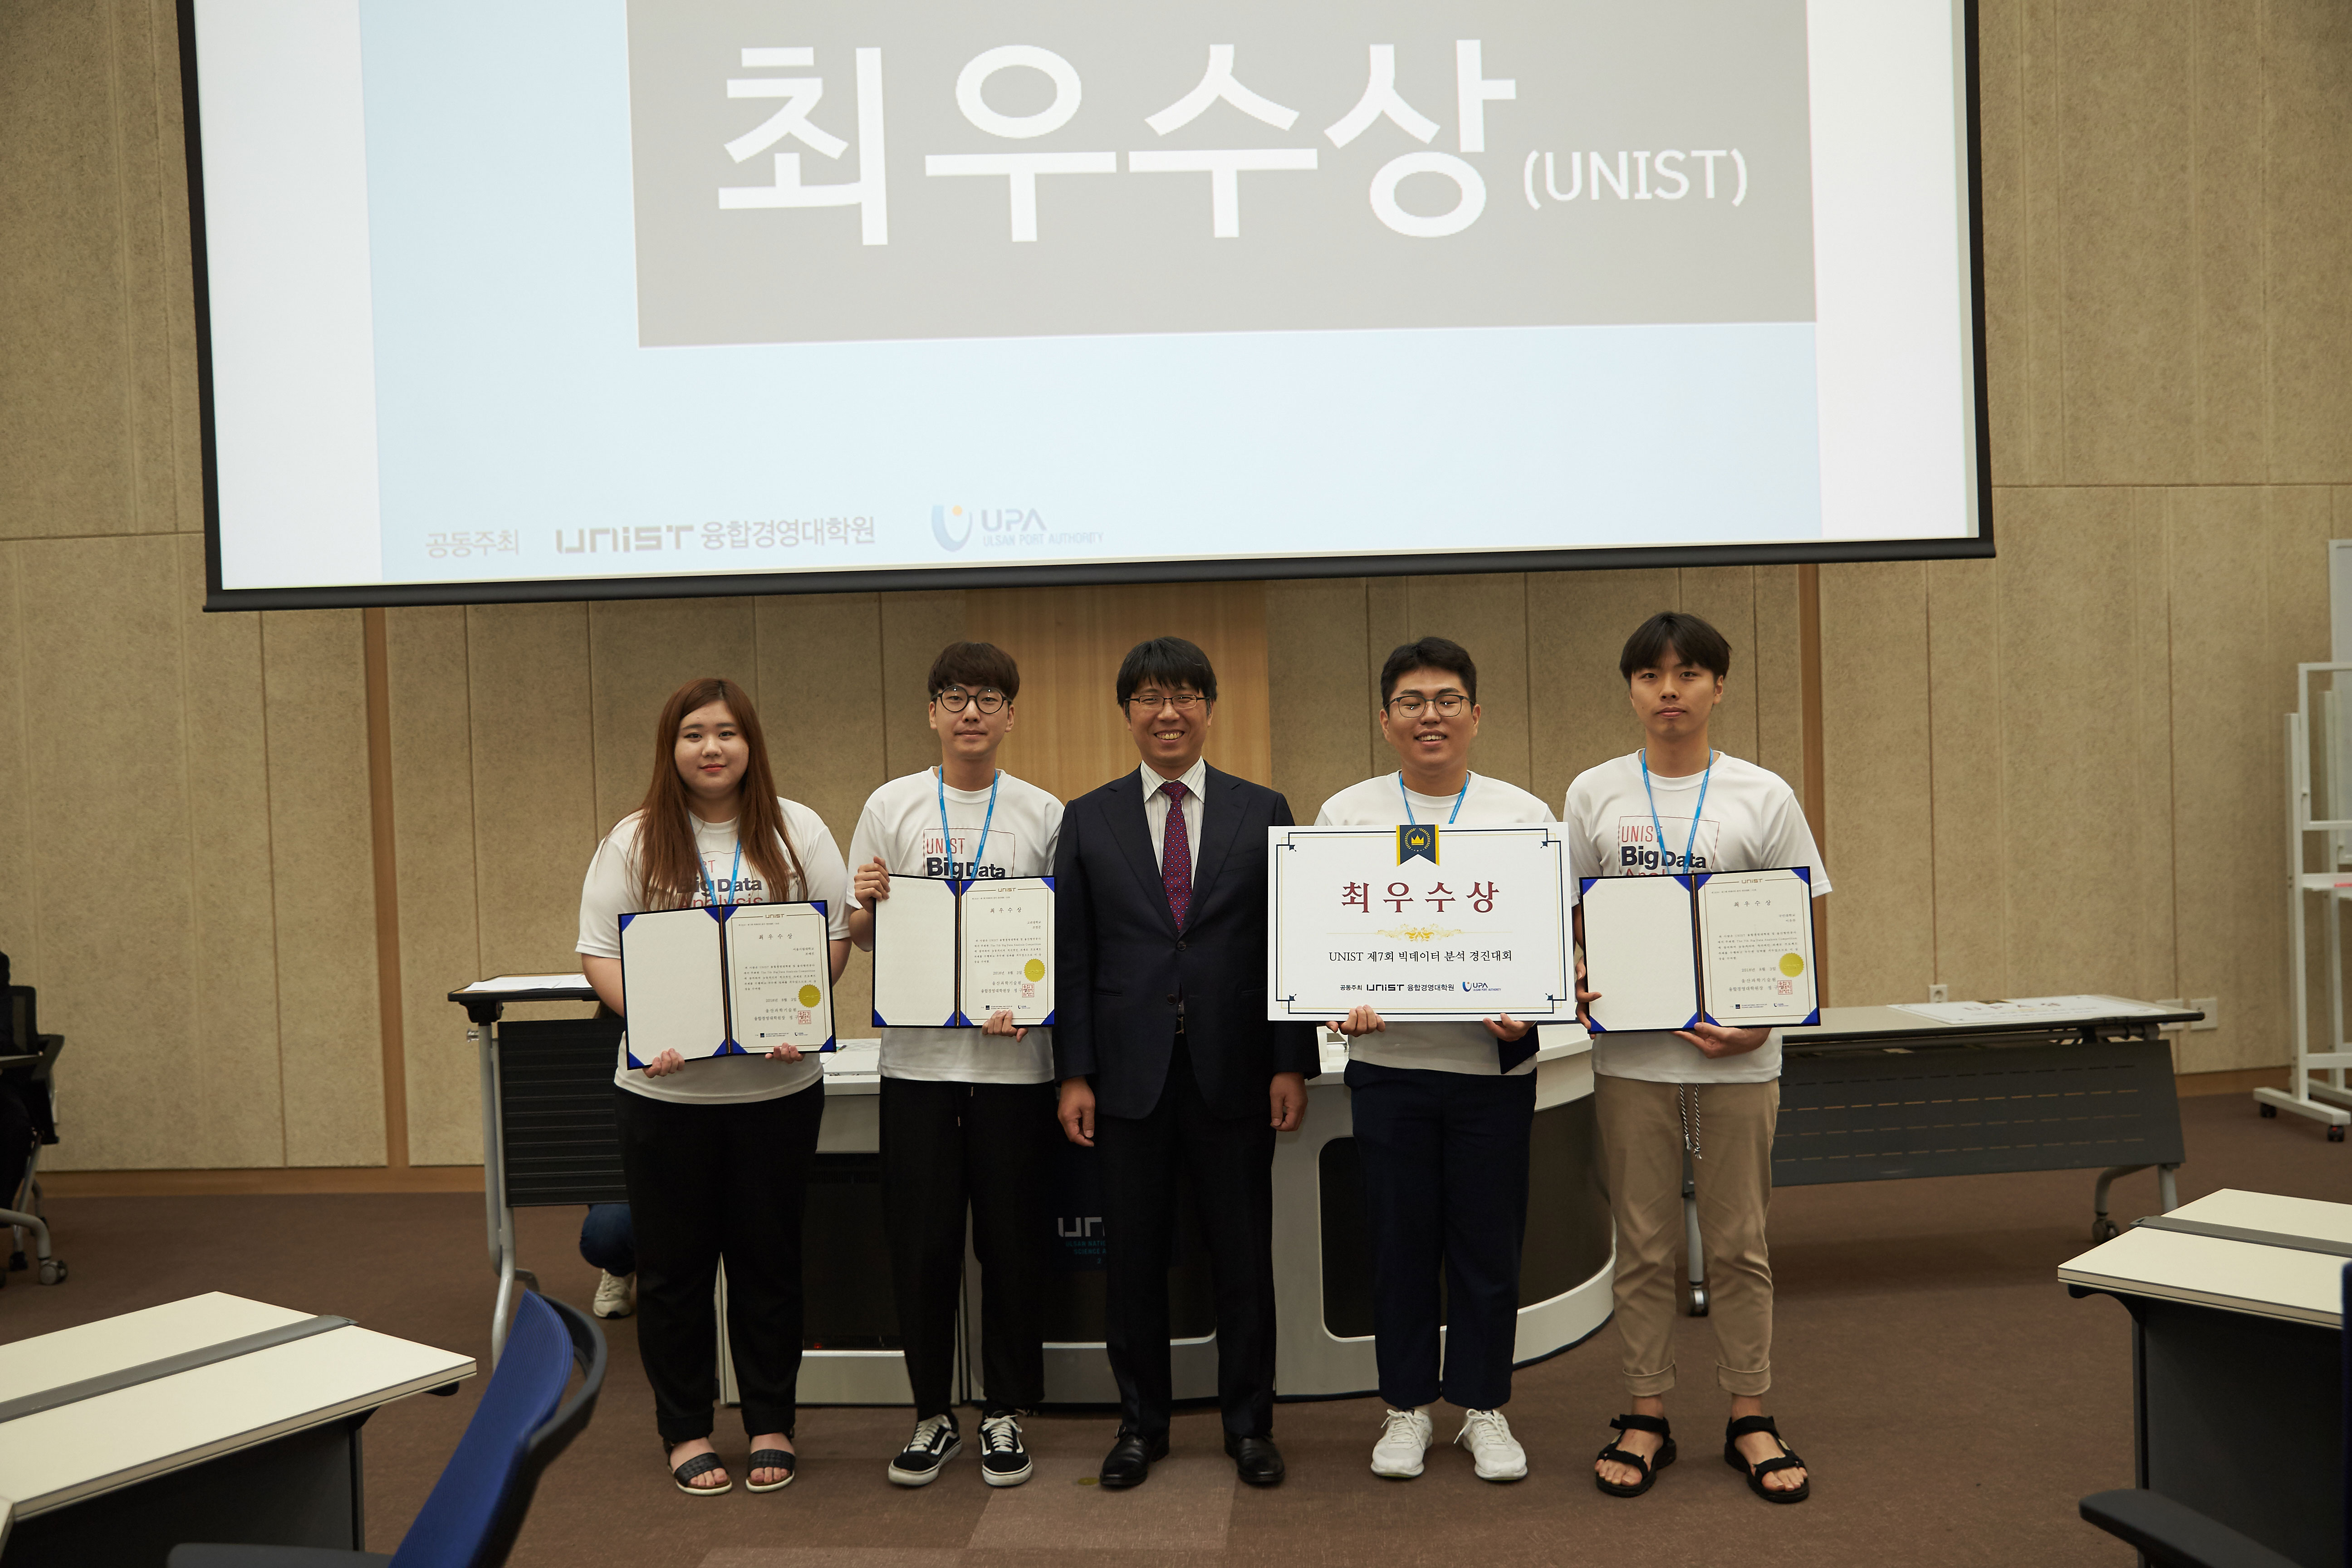 3조 학생들(이유찬, 유지태, 조범준, 조예진)이 최우수상을 수상했다. | 사진: 김경채